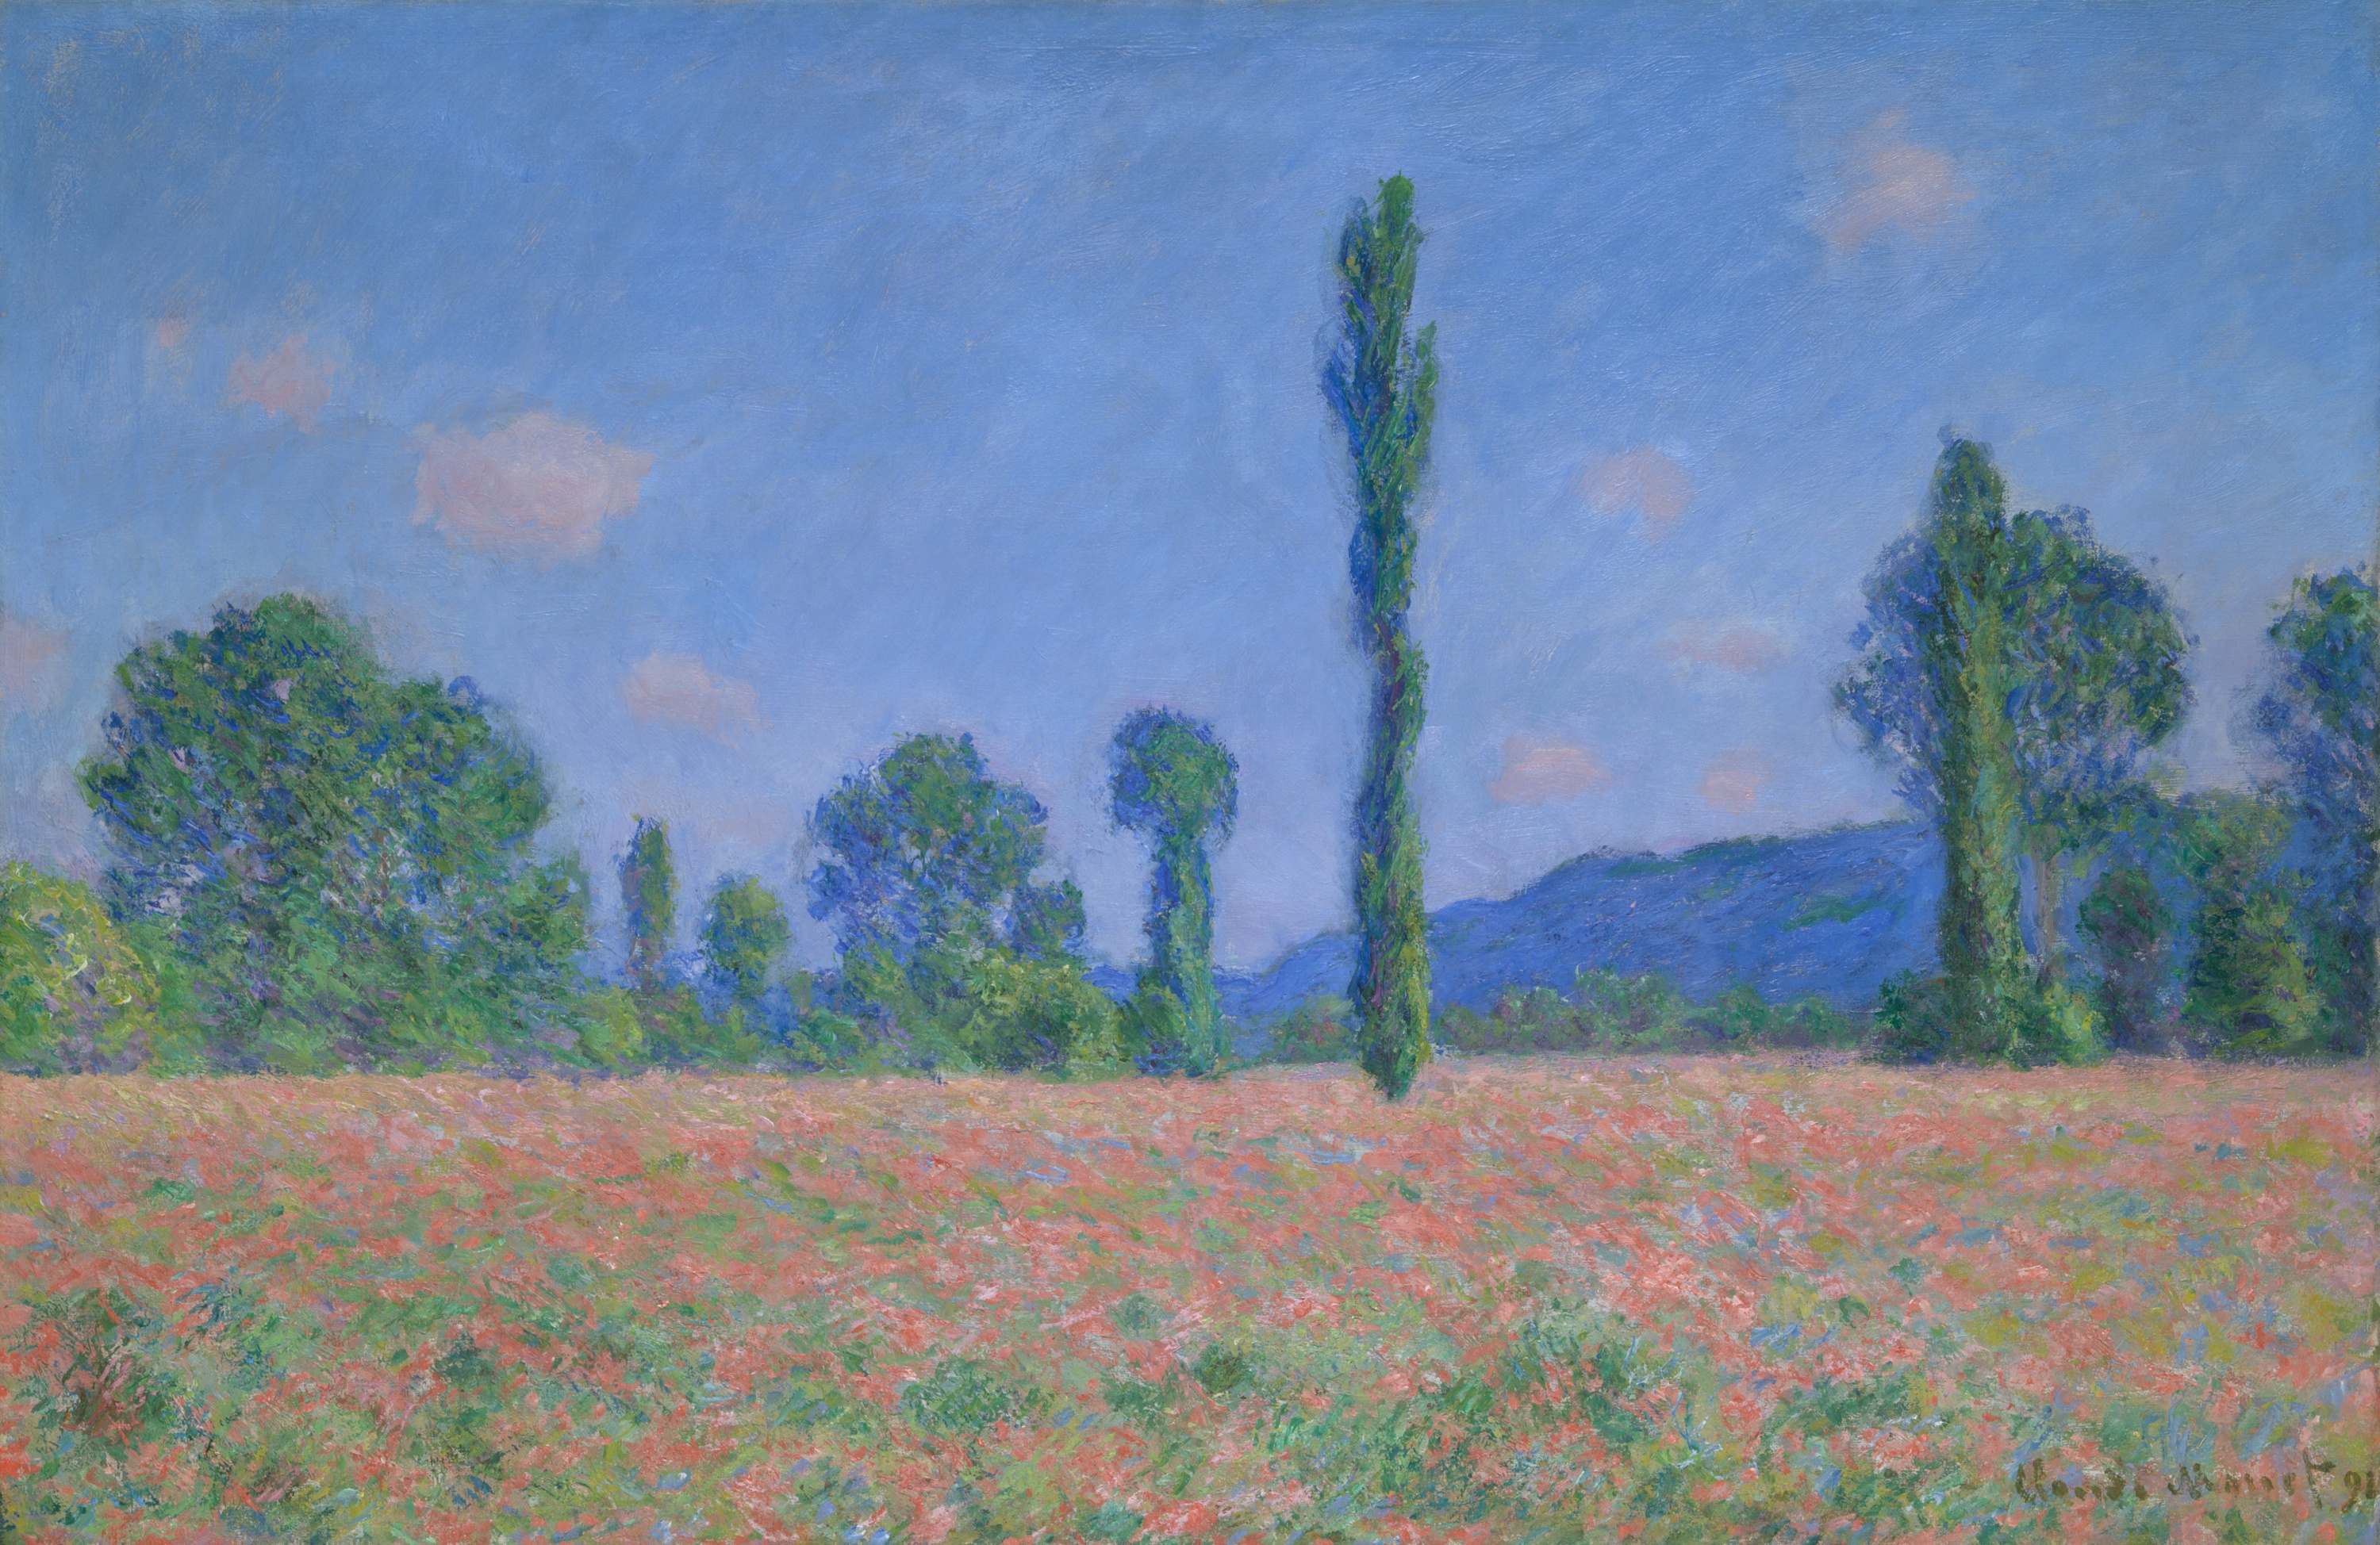 ポピー畑（ジヴェルニー） by Claude Monet - 1890/91年 - 61.2 × 93.4 cm 